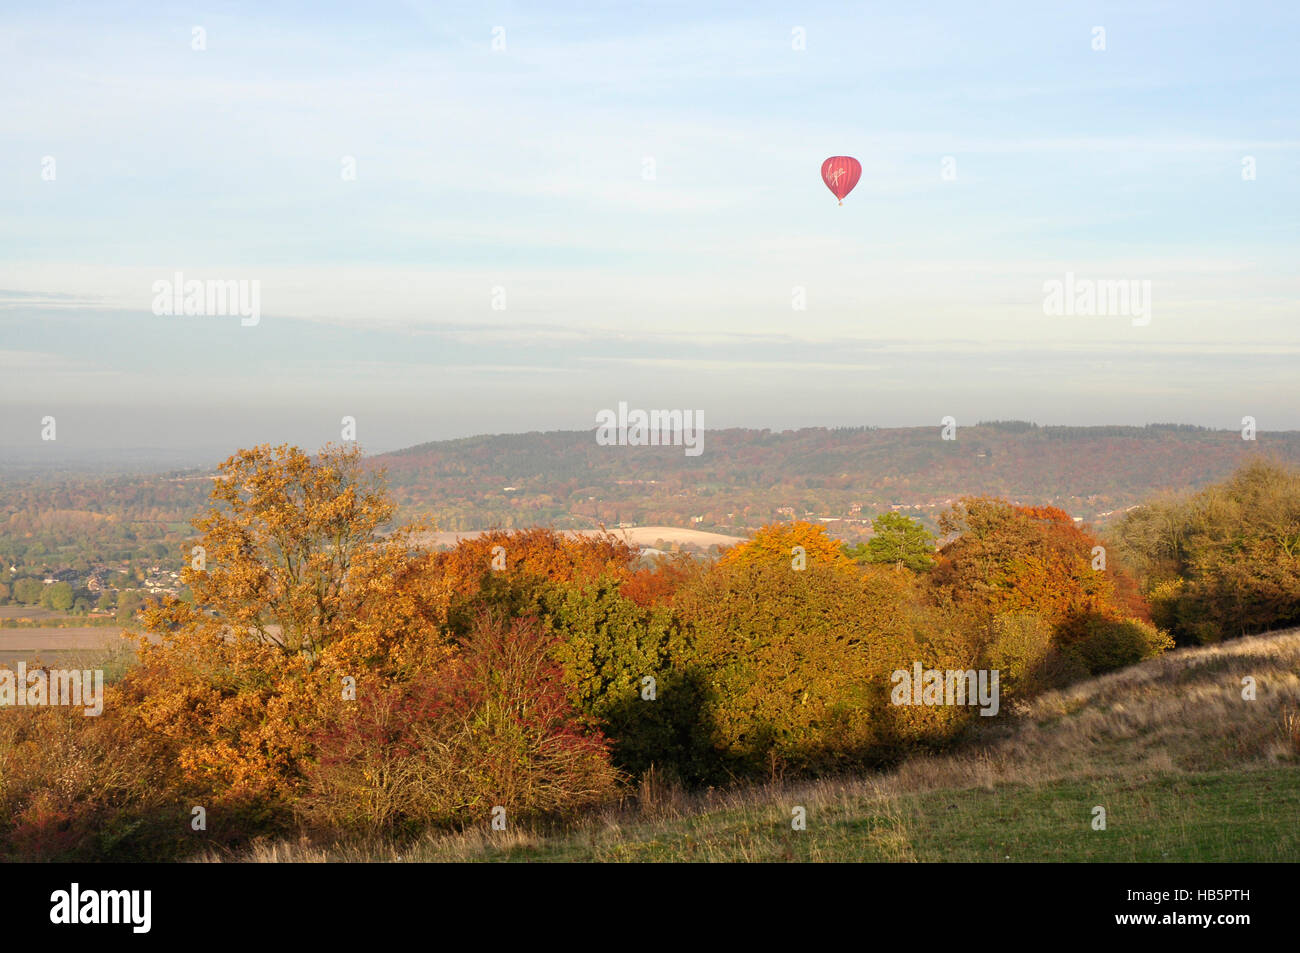 Chiltern Hills - Couleurs d'automne dans les arbres - Ciel bleu moucheté de nuages - red hot air balloon flottant doucement sur les collines Banque D'Images